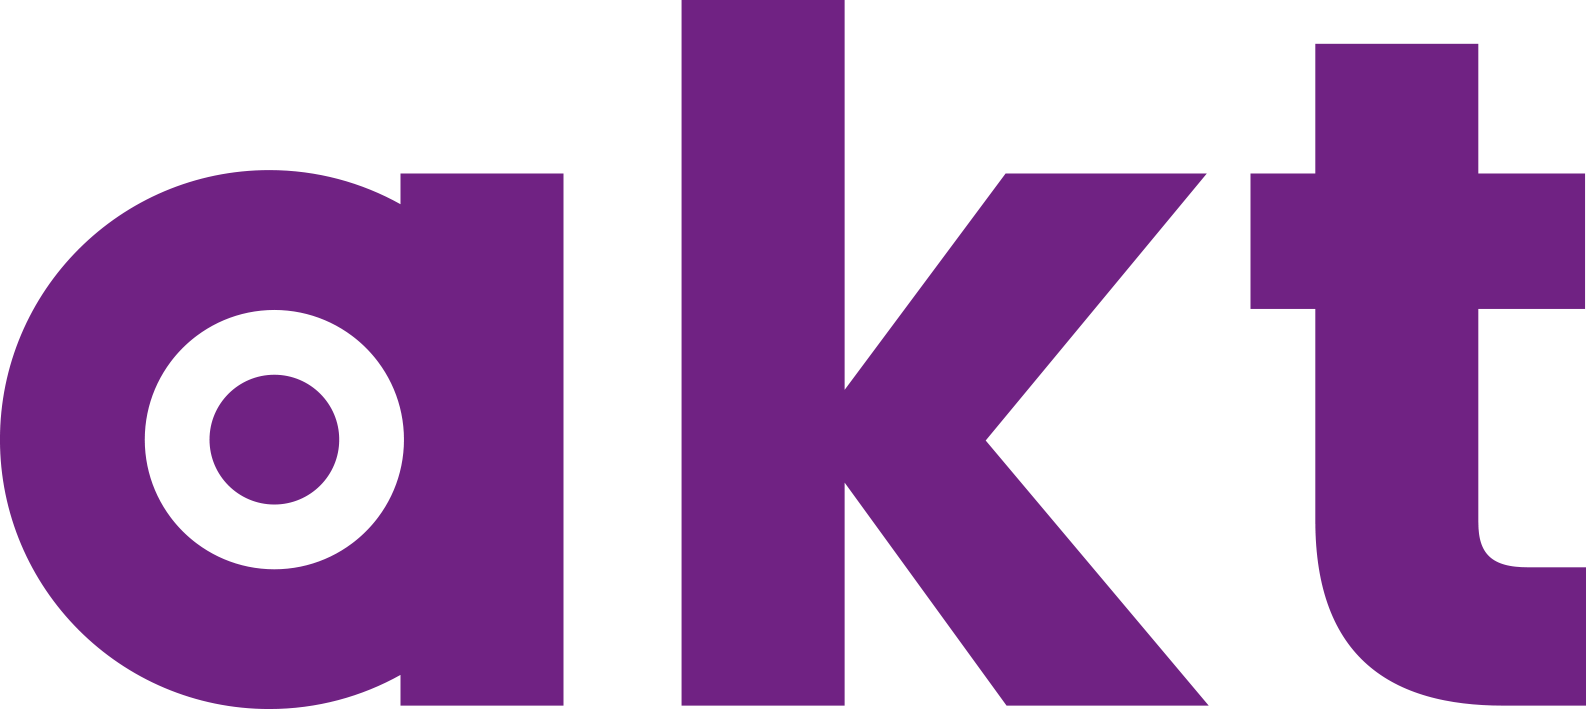 akt_logo_purple